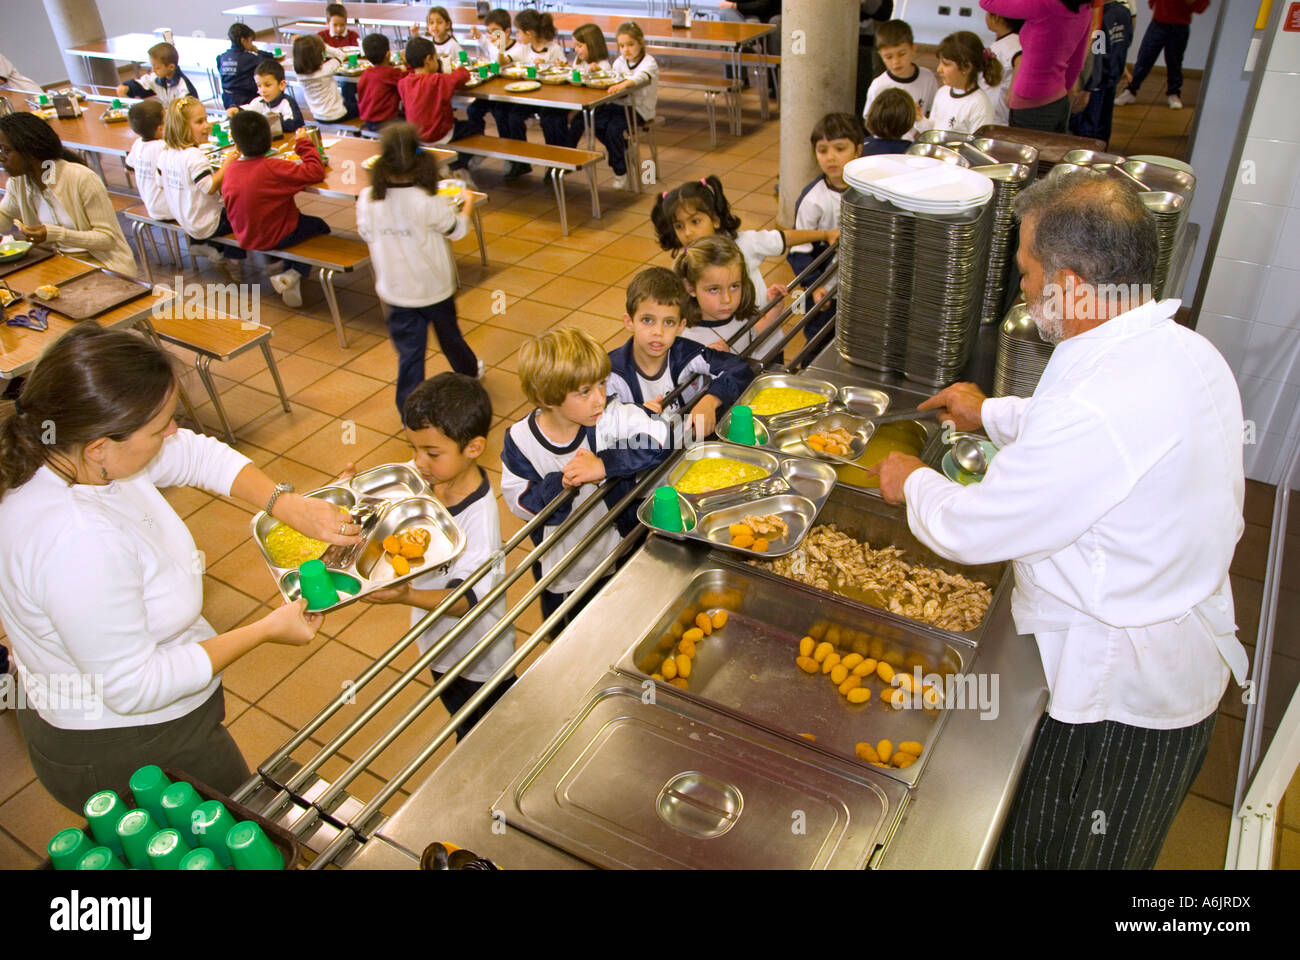 Schule ABENDESSEN MITTAGESSEN KANTINE SERVICE serviert beliebte Gesunde ausgewogene Mittagessen Kleinkinder Schulkinder in der Schule Kantine mit Küchenchef und Lehrer Stockfoto